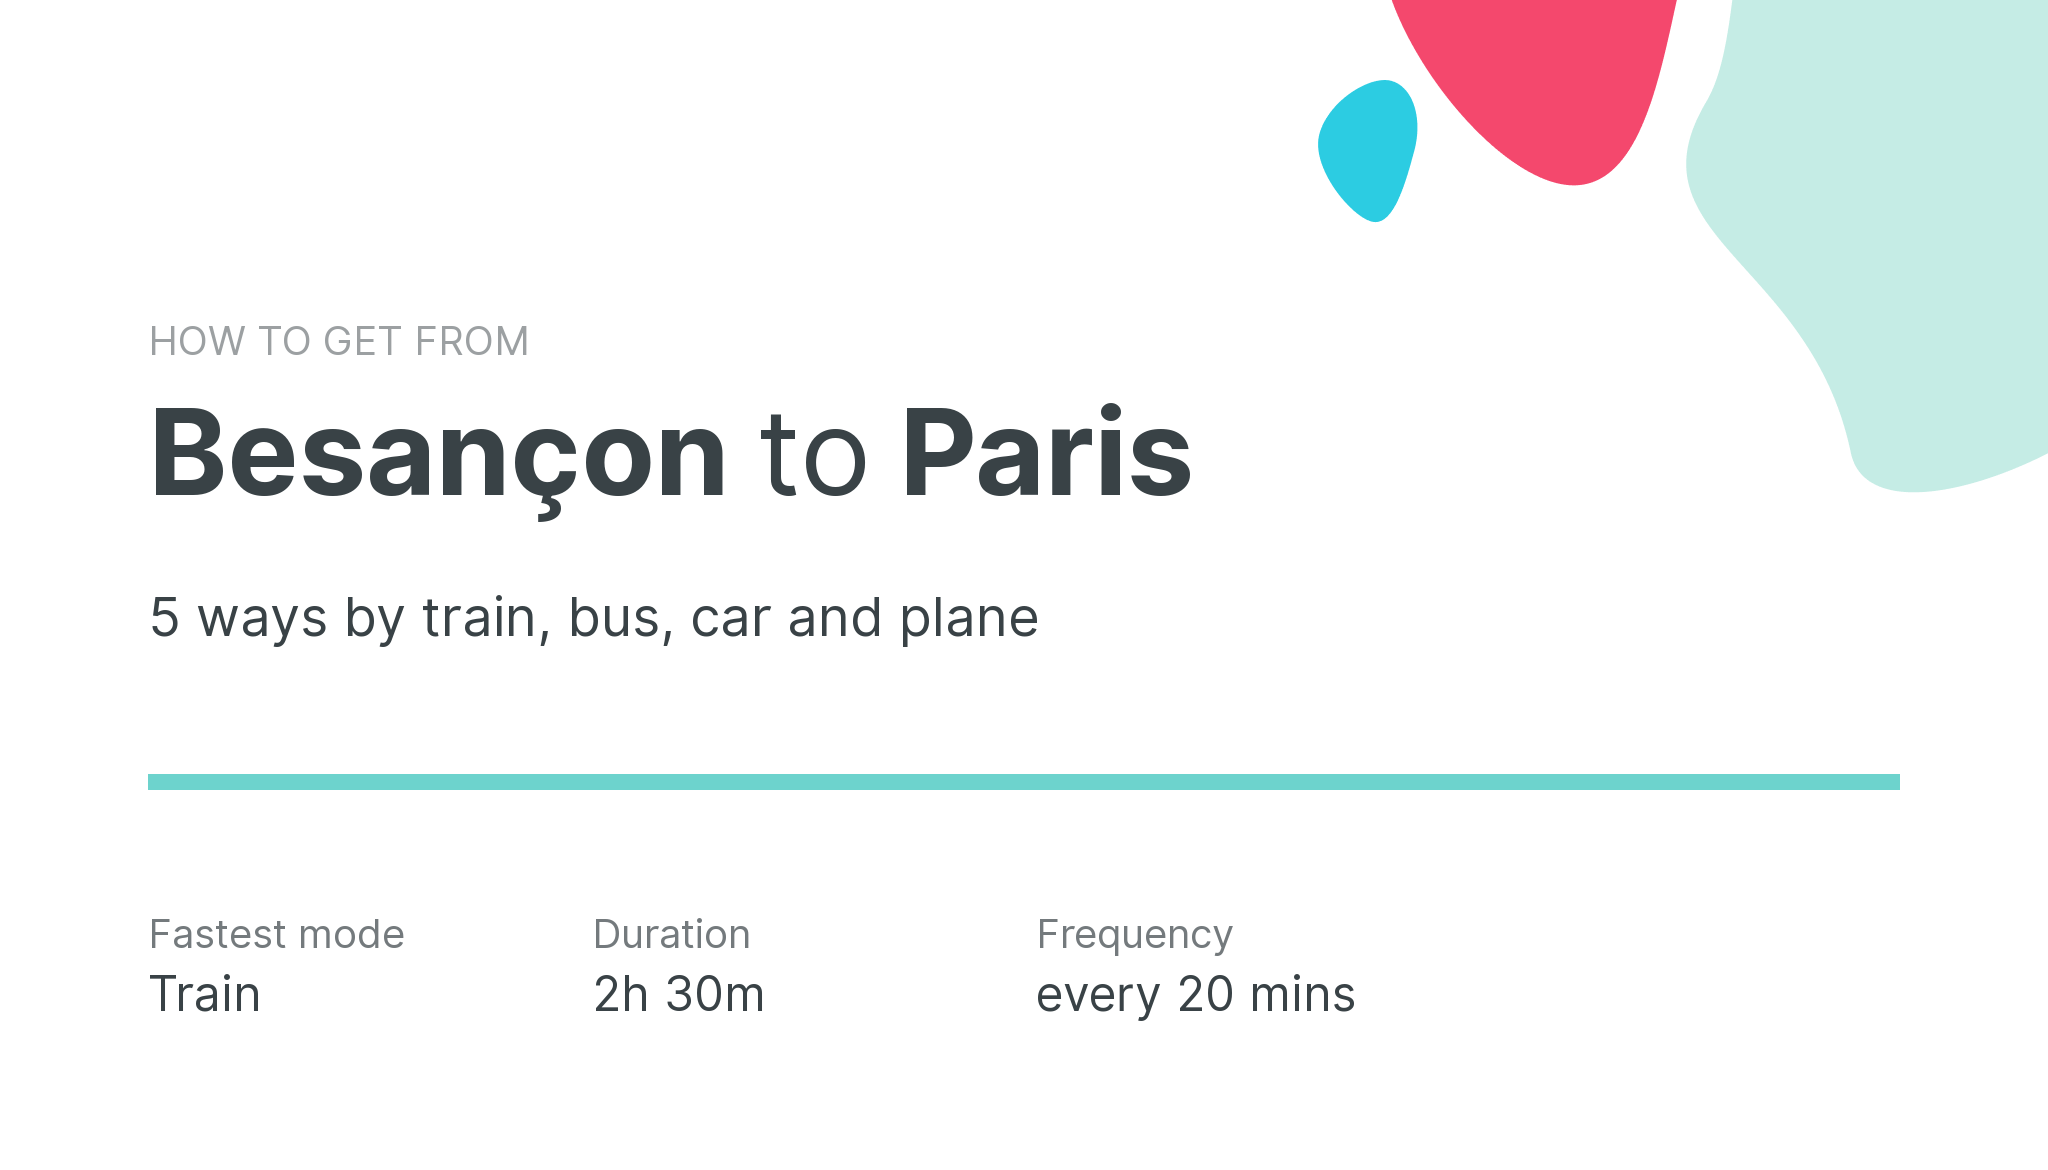 How do I get from Besançon to Paris